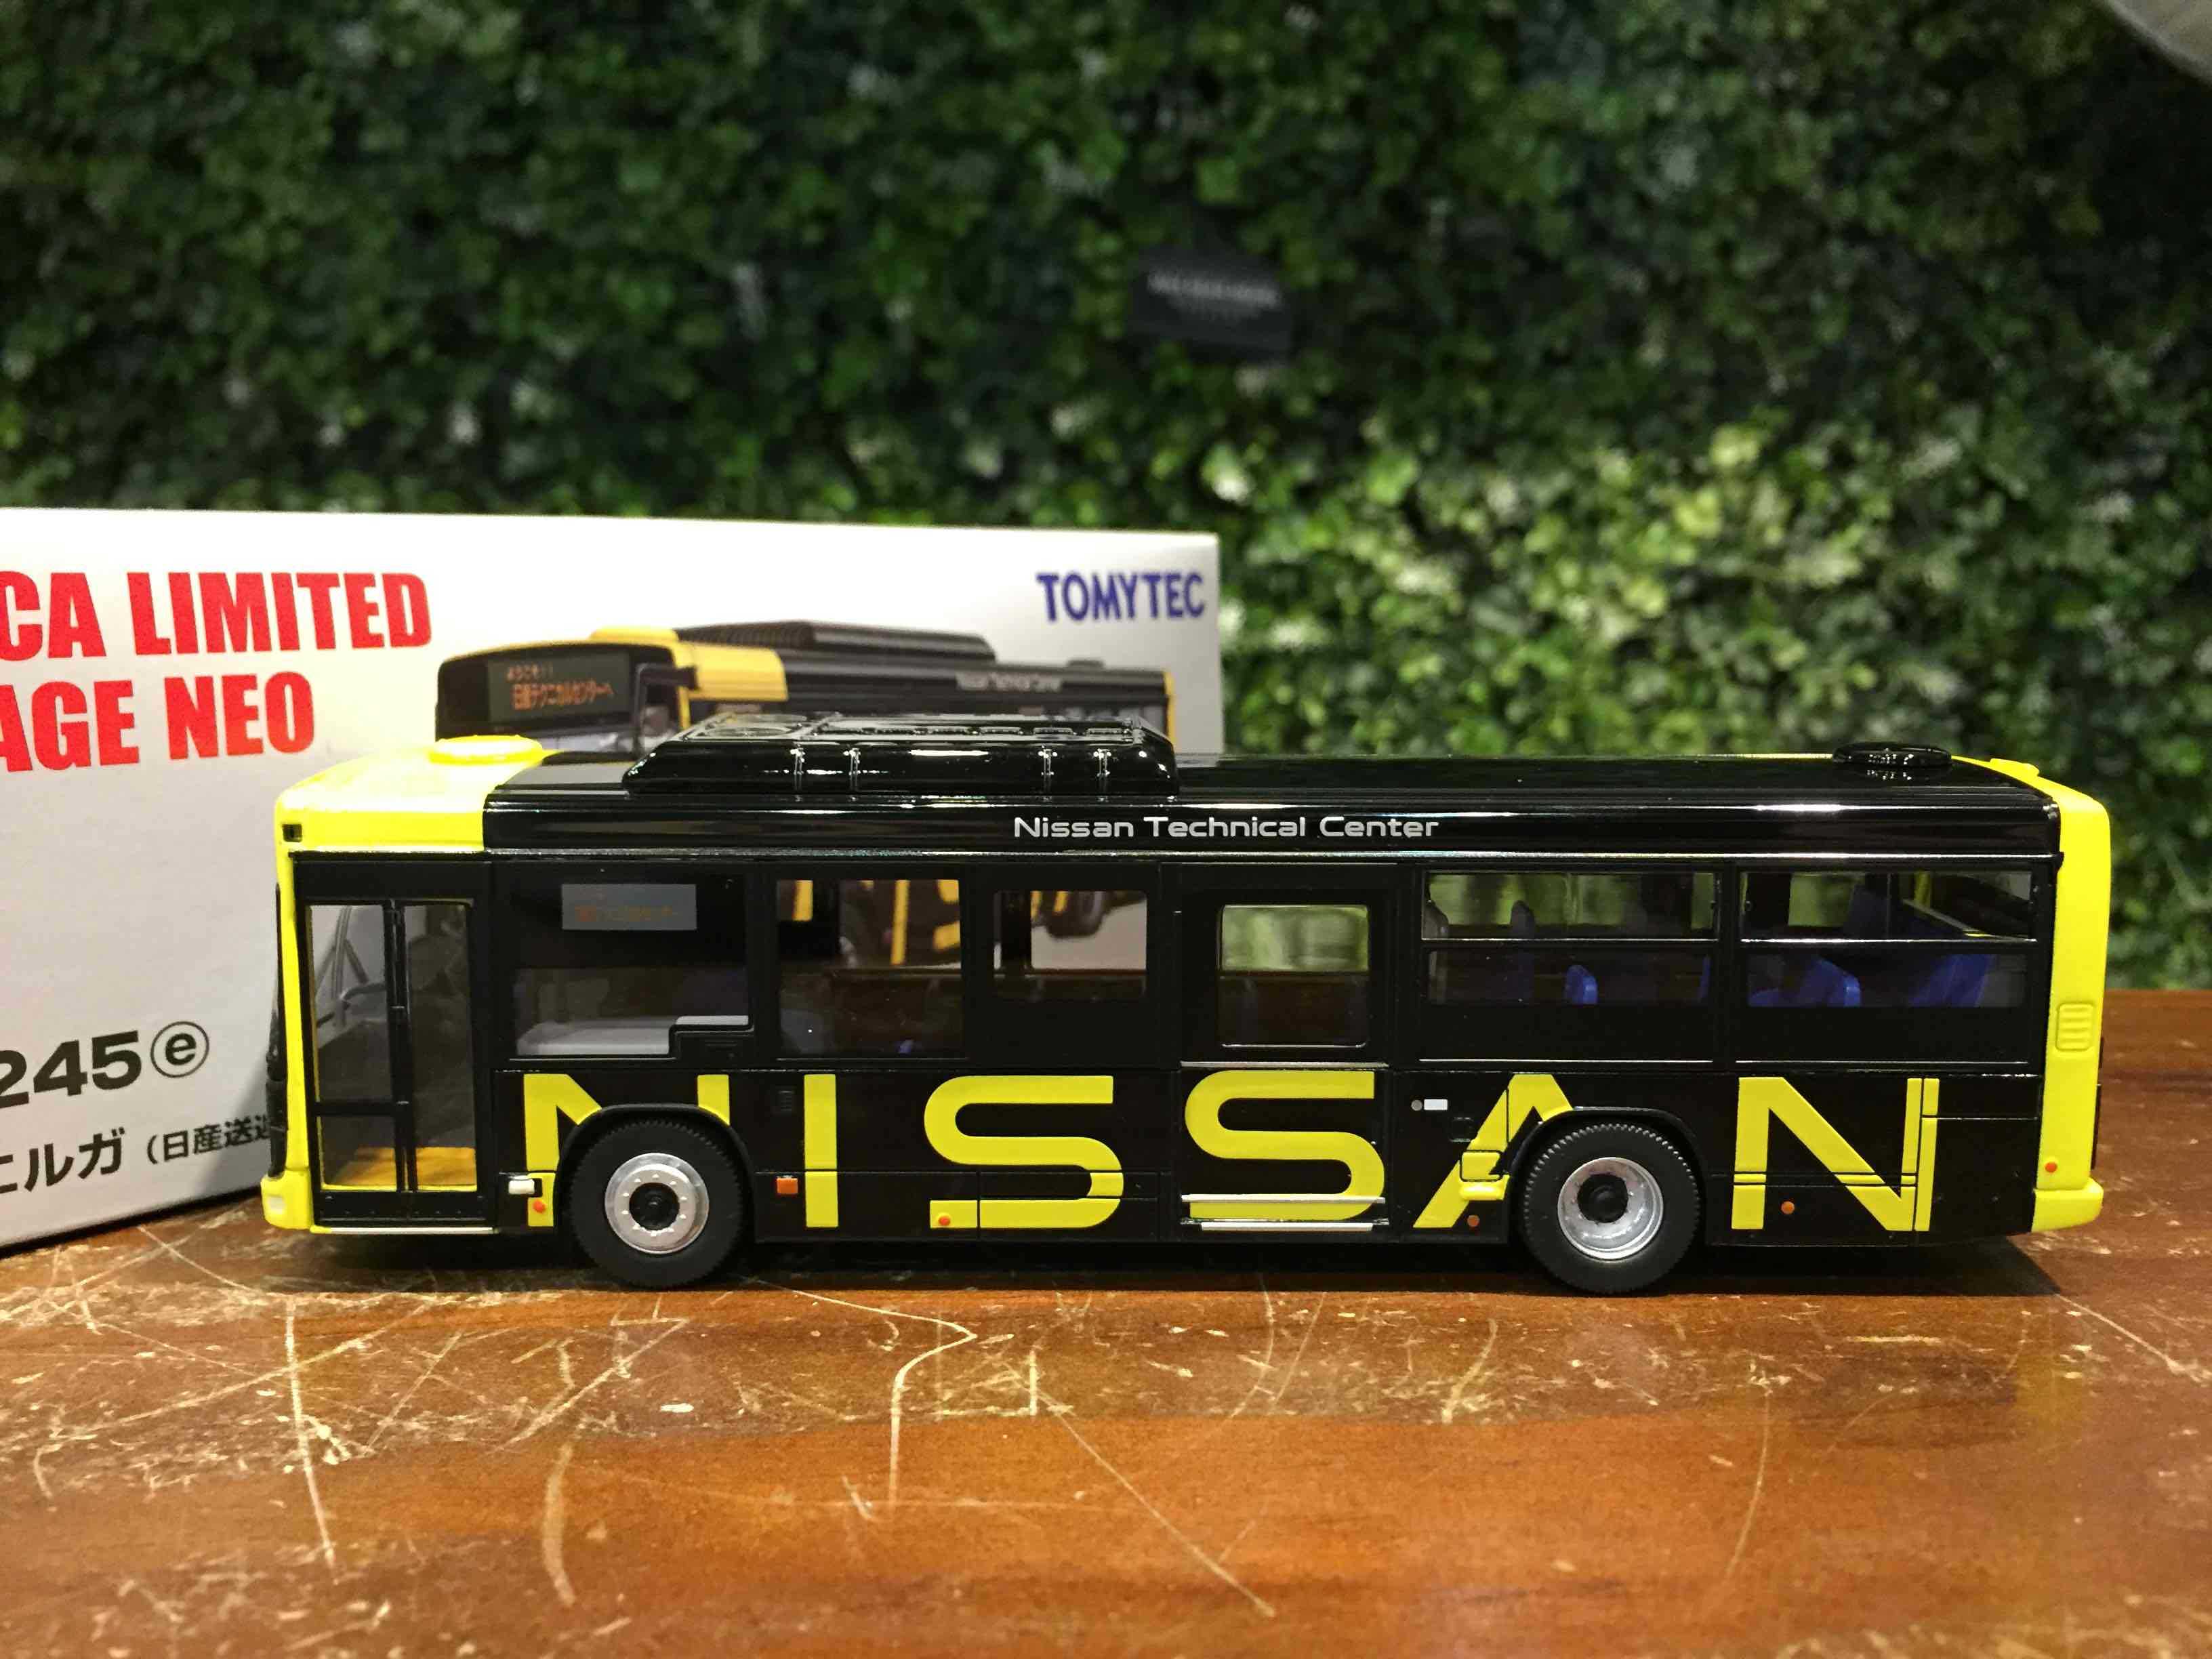 1/64 Tomica Isuzu Erga Nissan Shuttle Bus LV-N245e【MGM】